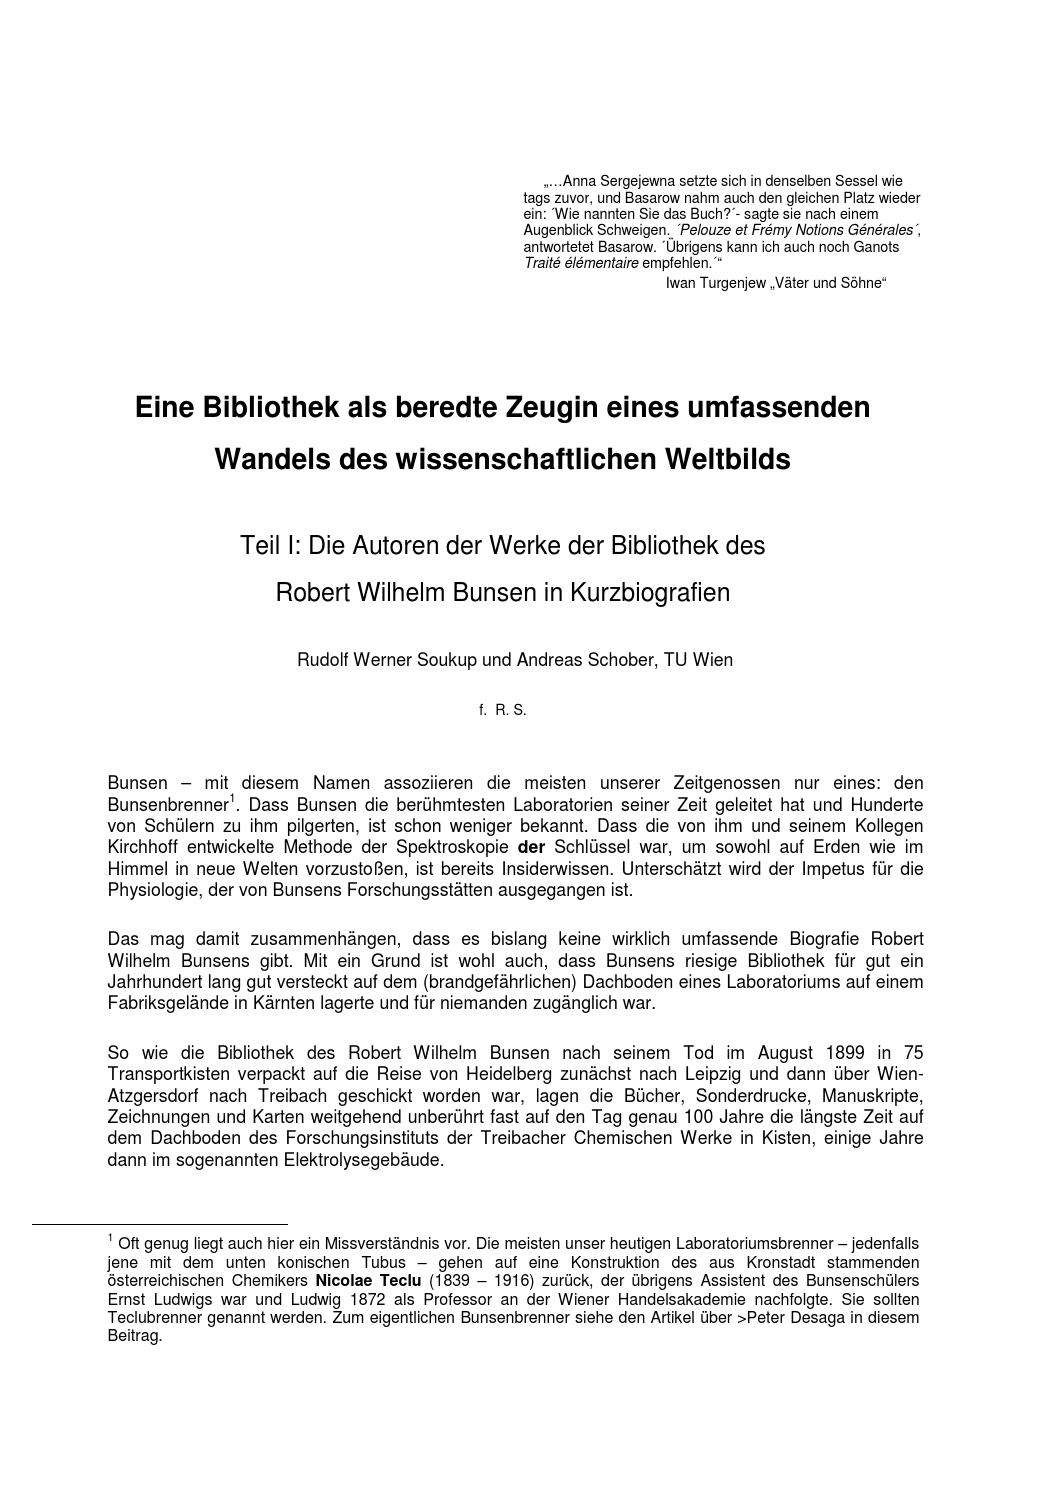 Leipzig Botanischer Garten Elegant Autoren Der Bunsenbibliothek Teil 1 by Auer Von Welsbach